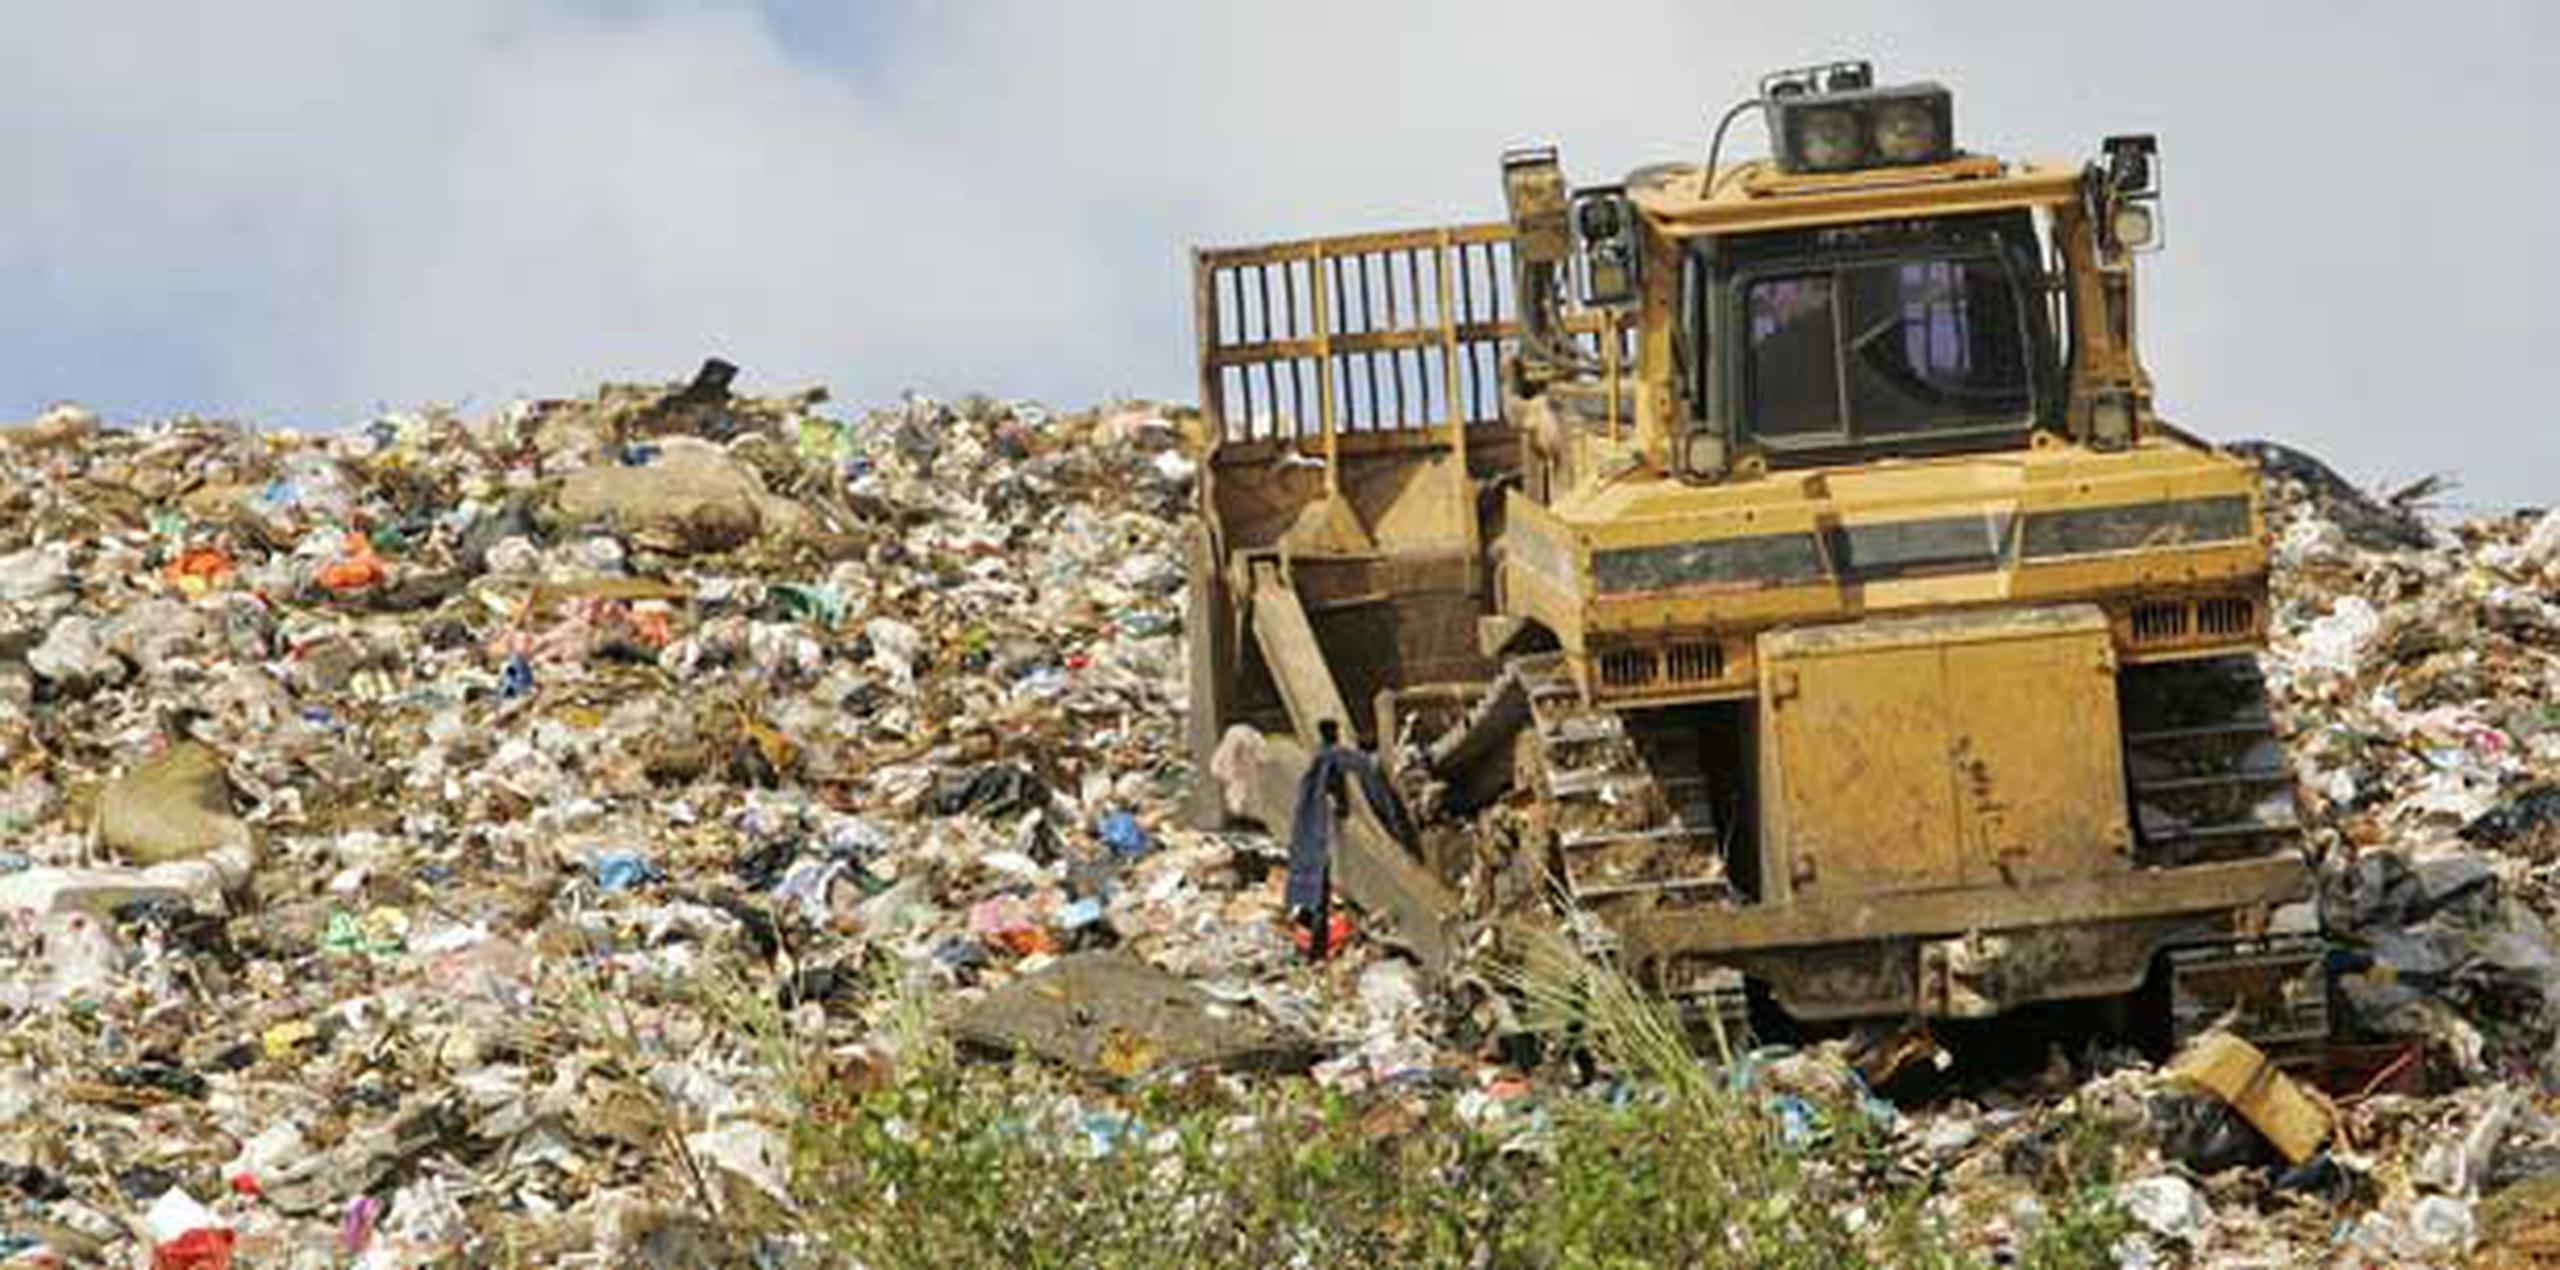 El representante Ricardo Llerandi  favorece adoptar una fecha límite para que los vertederos dejen de aceptar material reciclable. (Archivo)